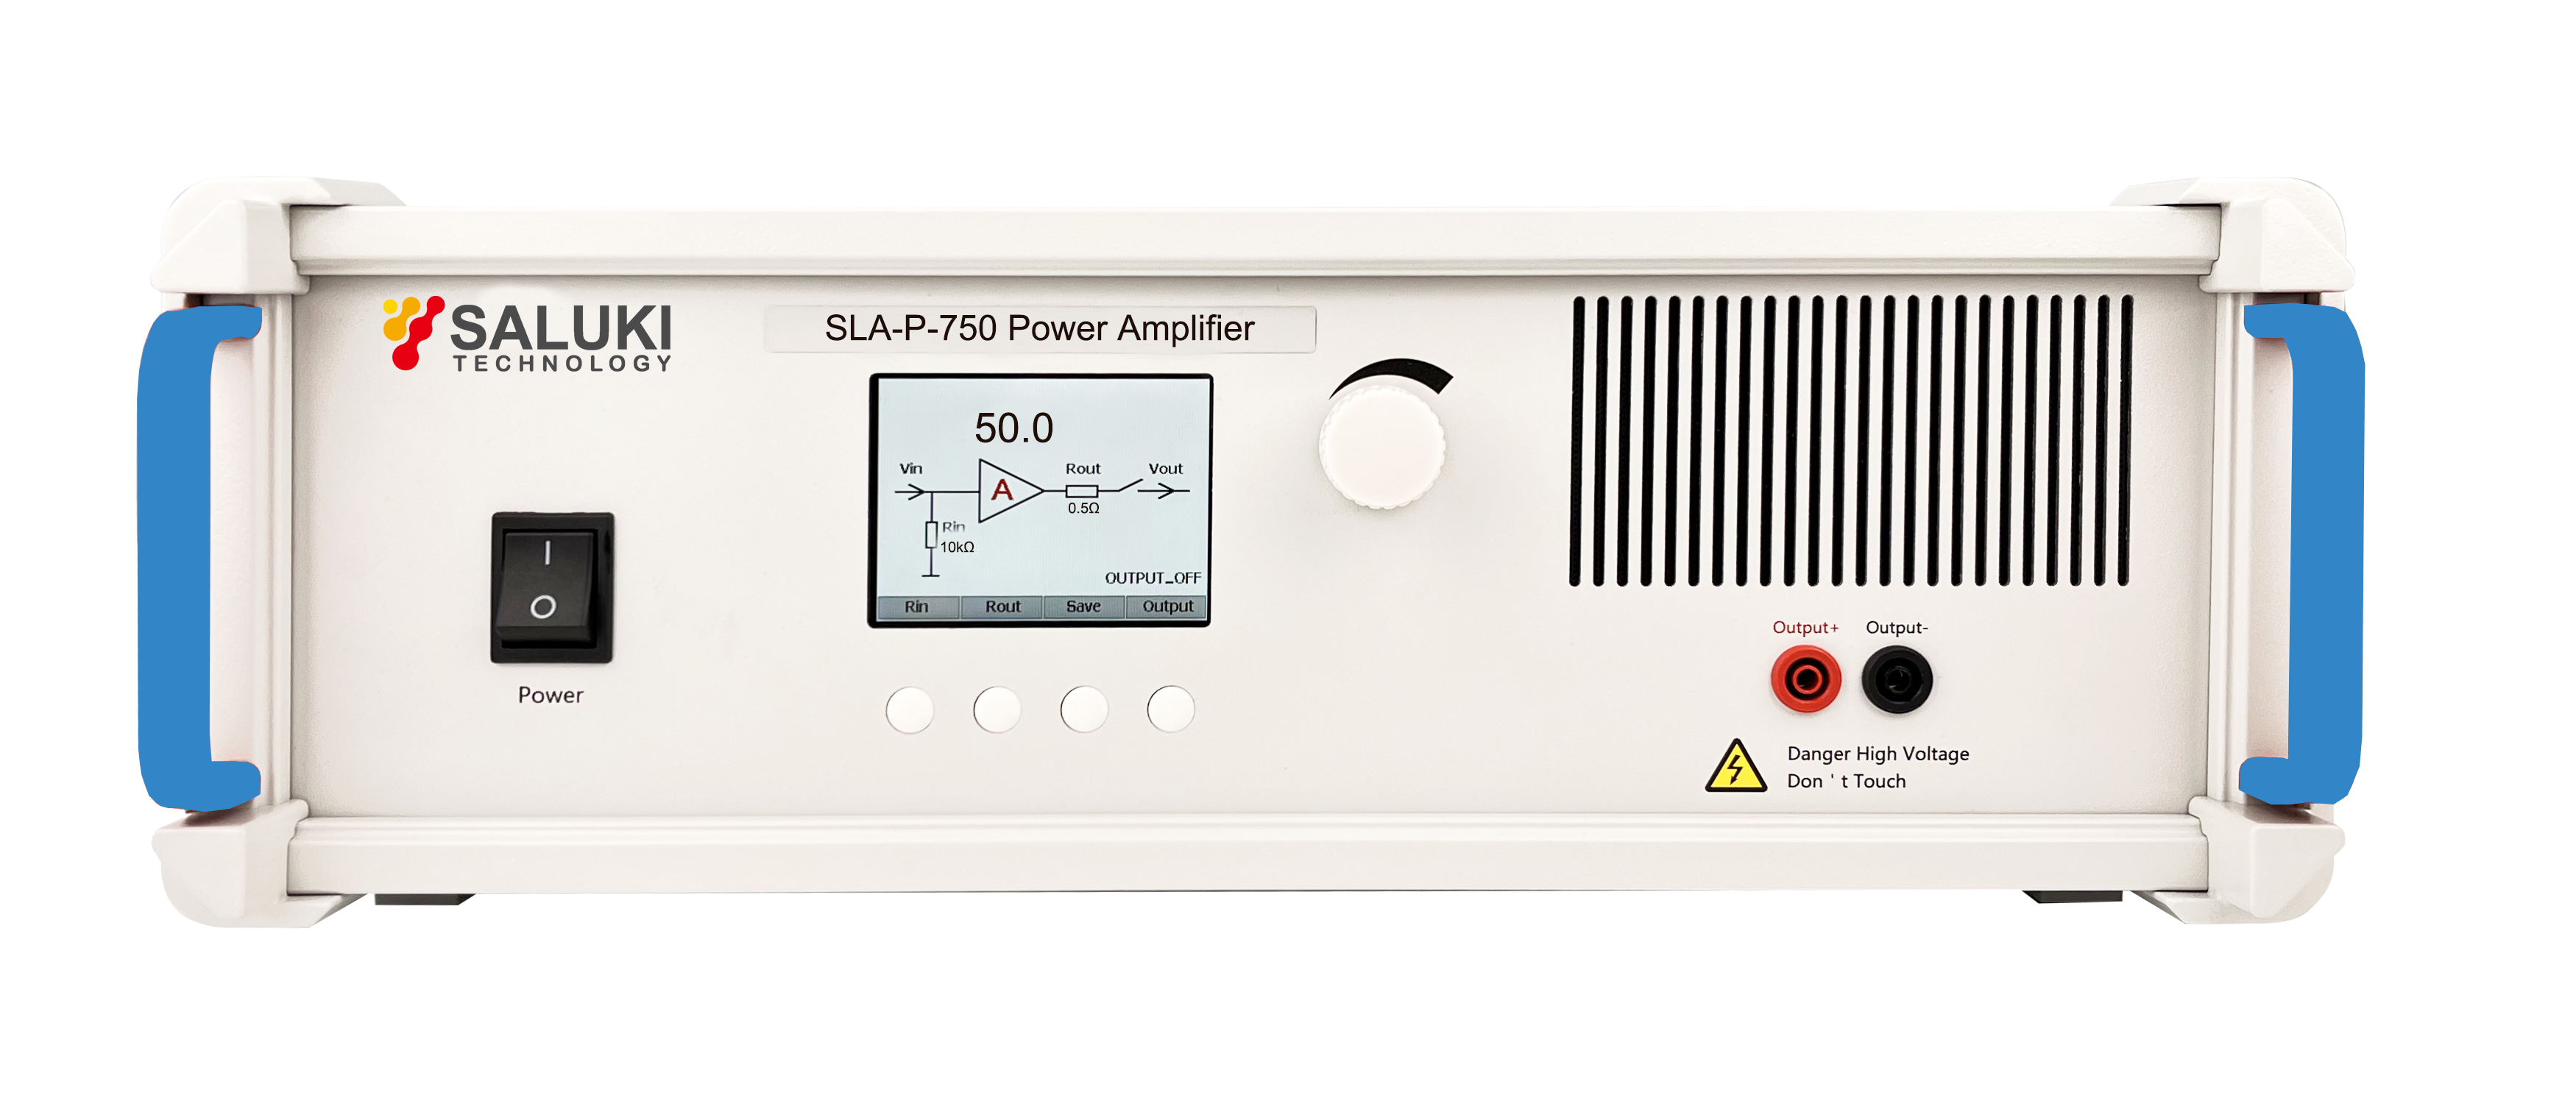 SLA-P-750 Power Amplifier